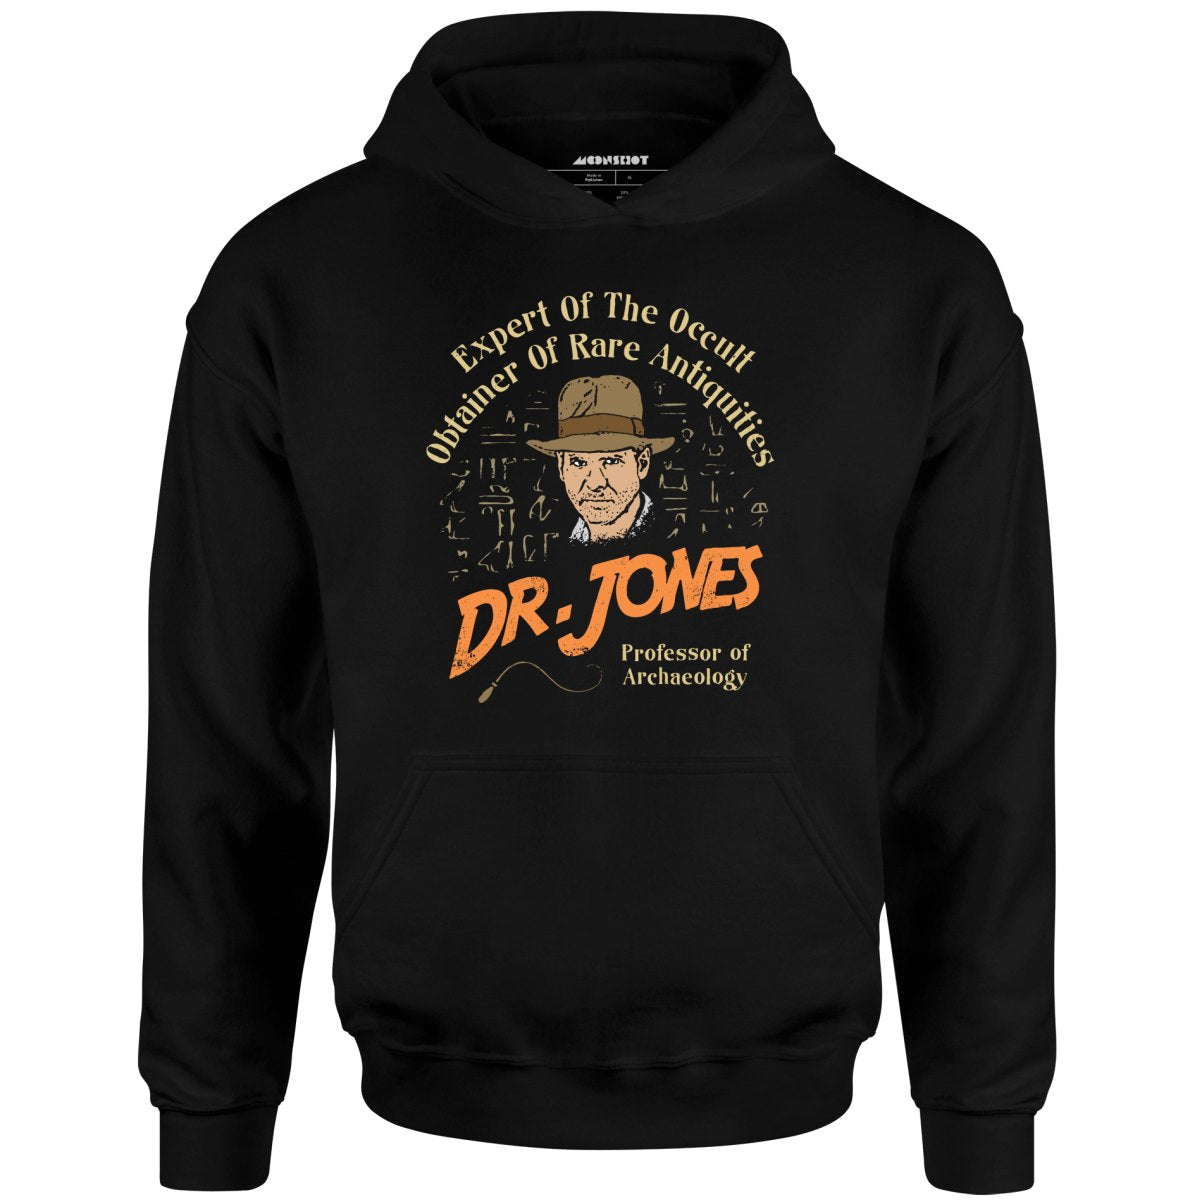 Dr. Jones Professor of Archaeology - Unisex Hoodie